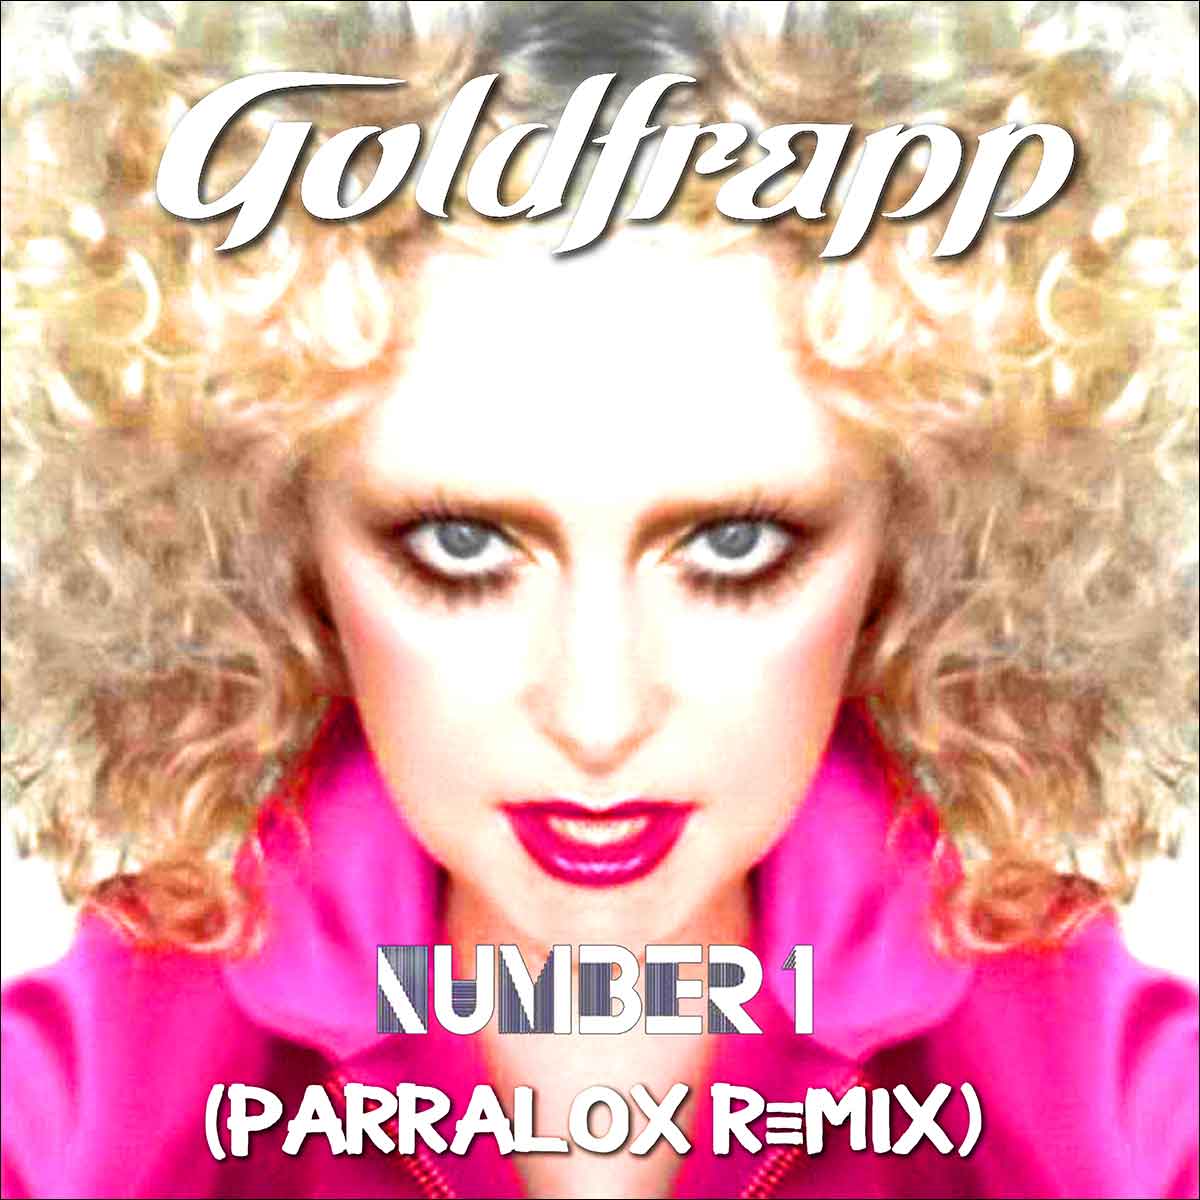 Show 422 – Goldfrapp – Number 1 (Parralox Remix)